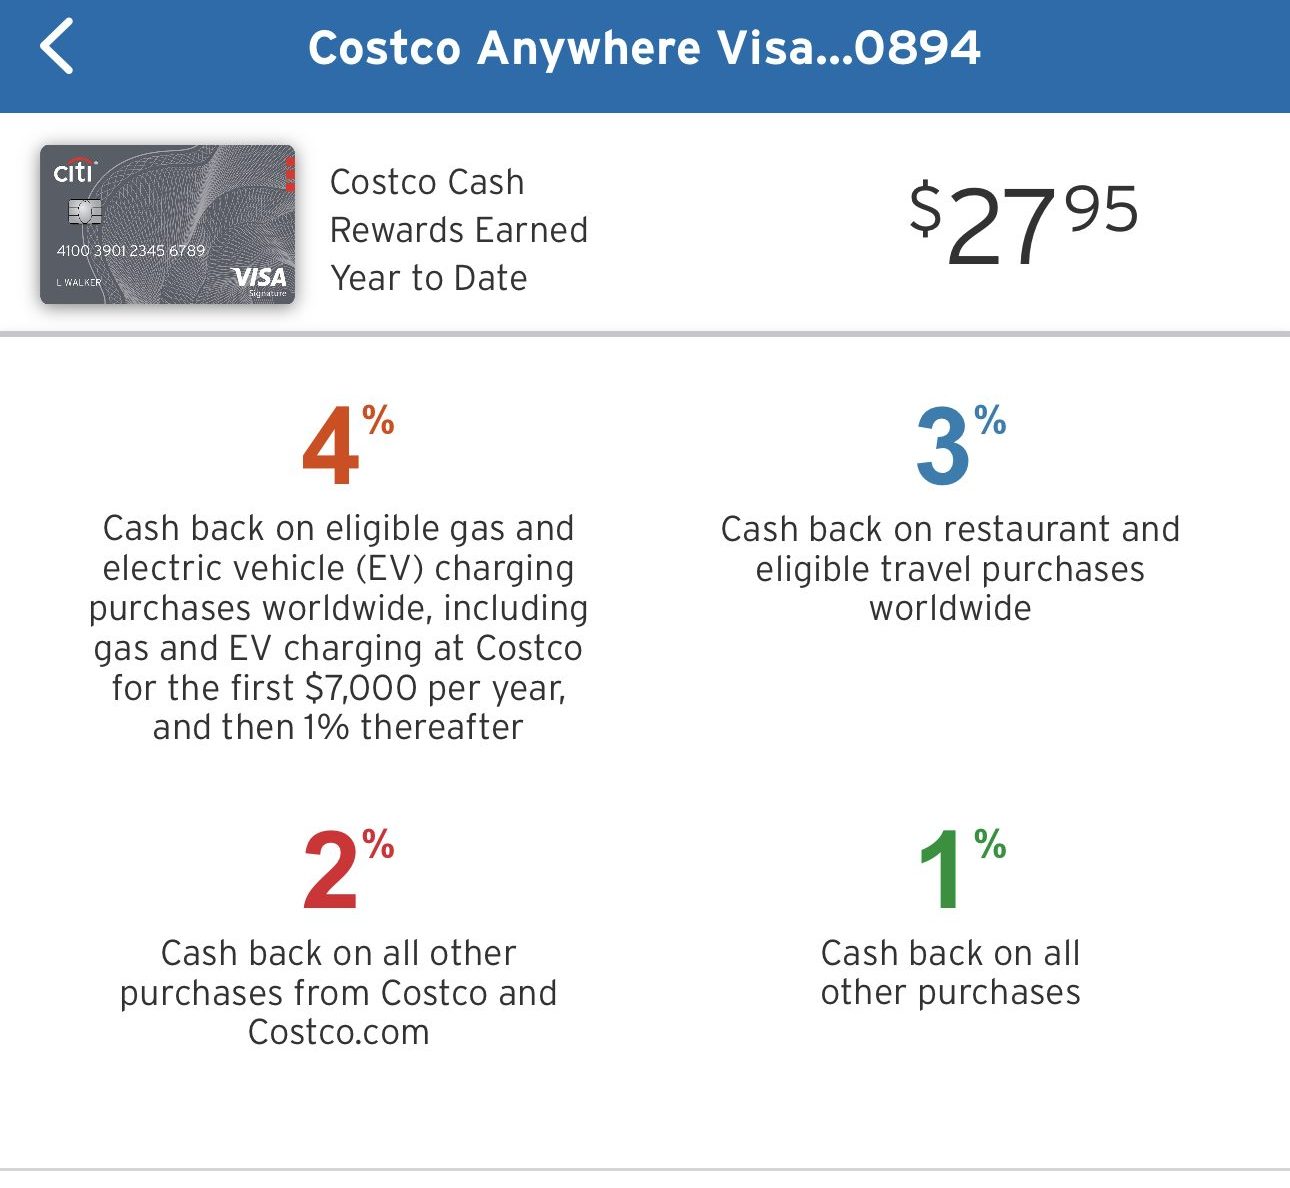 Citi Costco rewards model